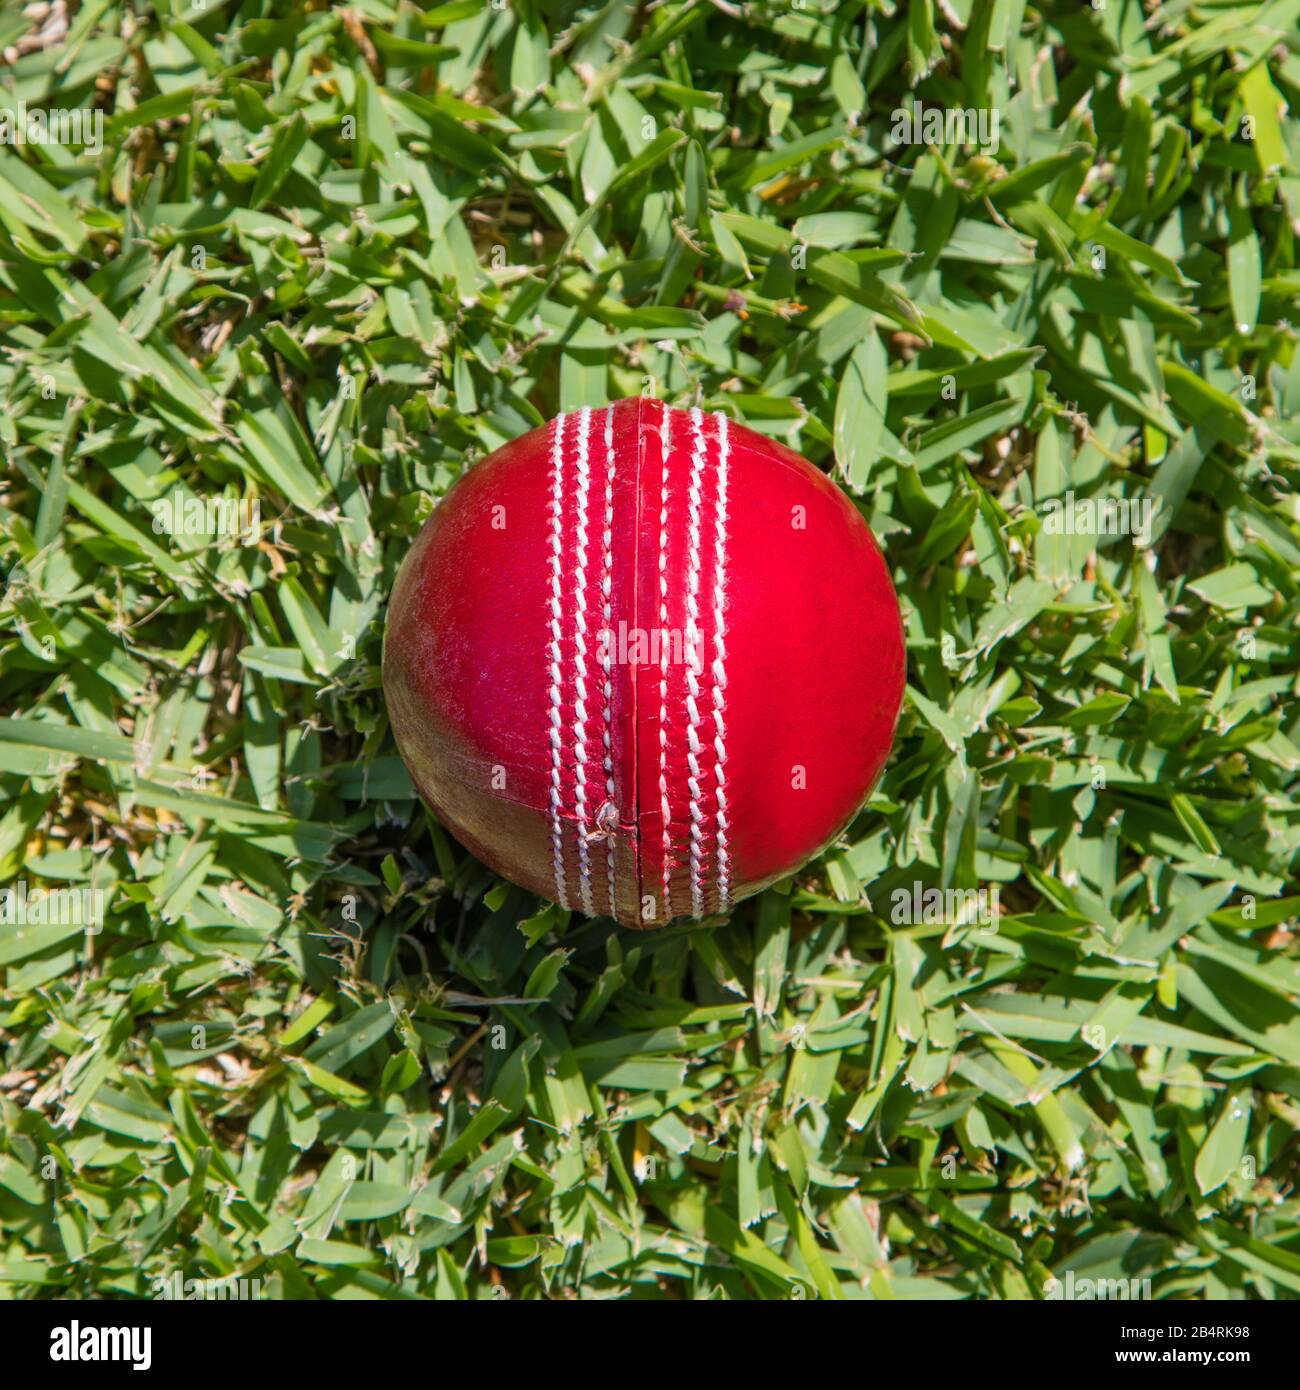 Primo piano di palla di cricket in pelle rossa su erba verde. Cricket è uno sport popolare in nazioni come Australia, India, Nuova Zelanda, Inghilterra e Sud Afri Foto Stock